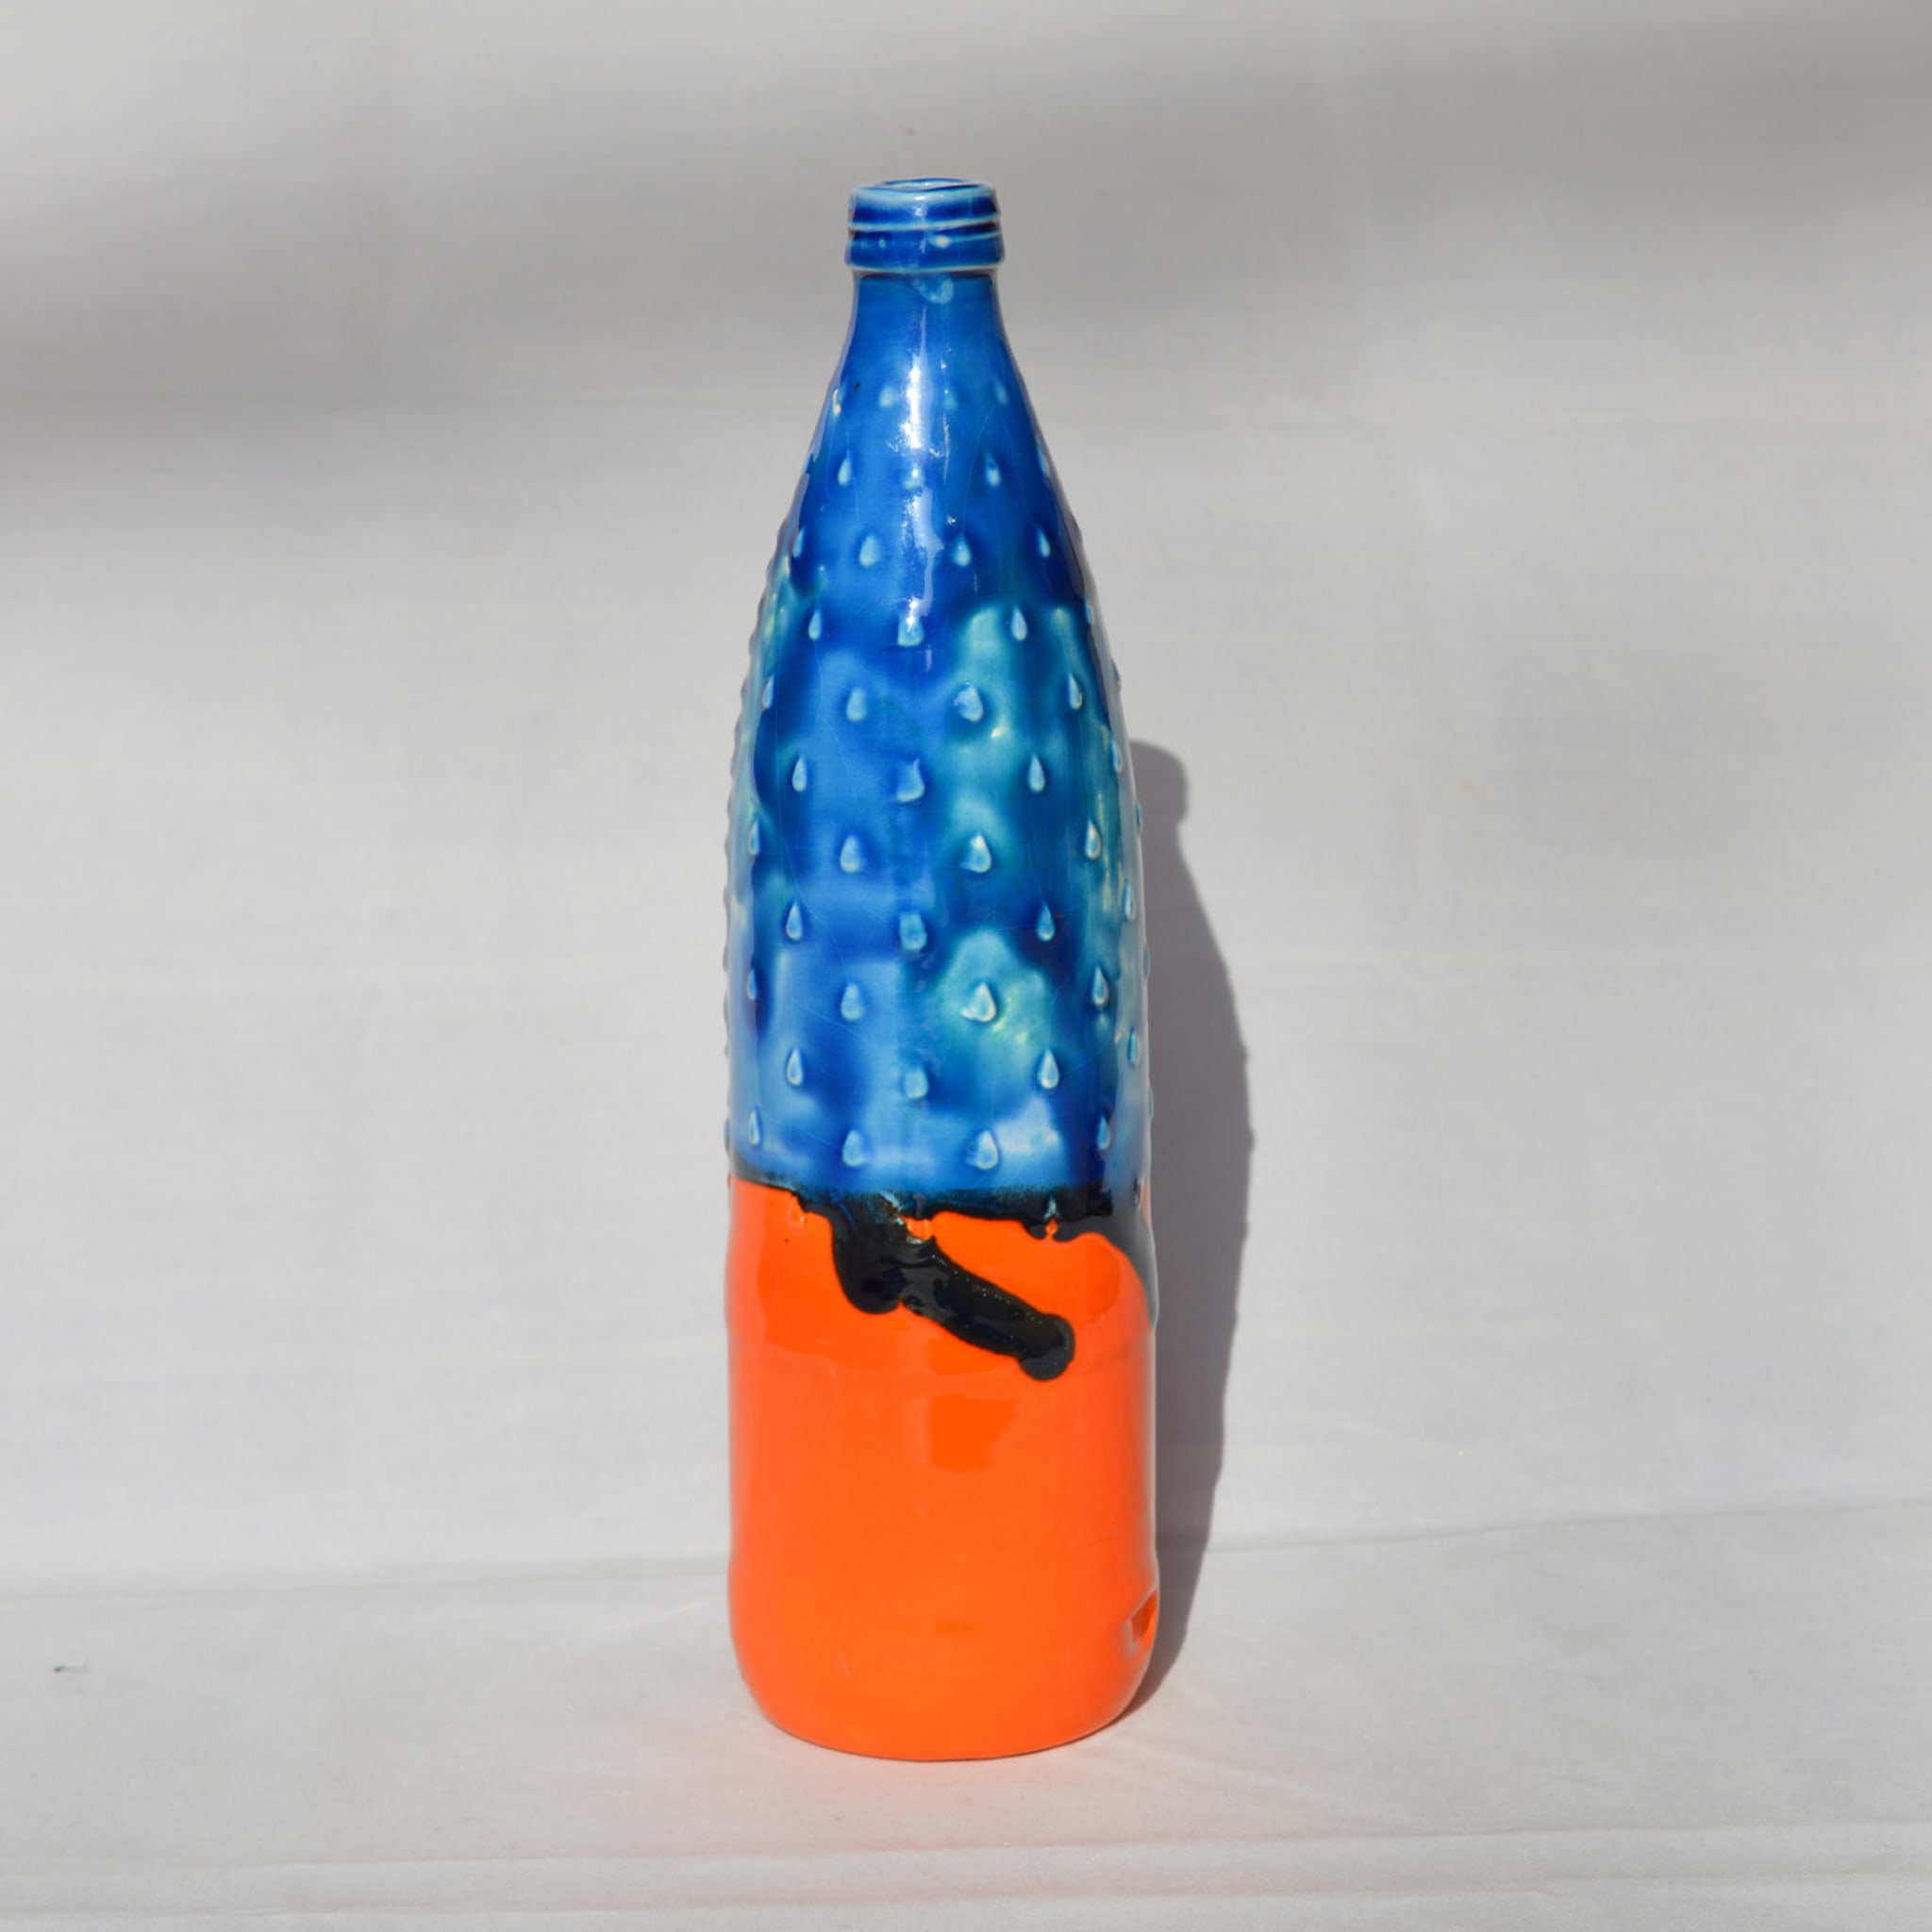 Più argilla meno plastica Bottiglia blu e arancione - Vista alternativa 1